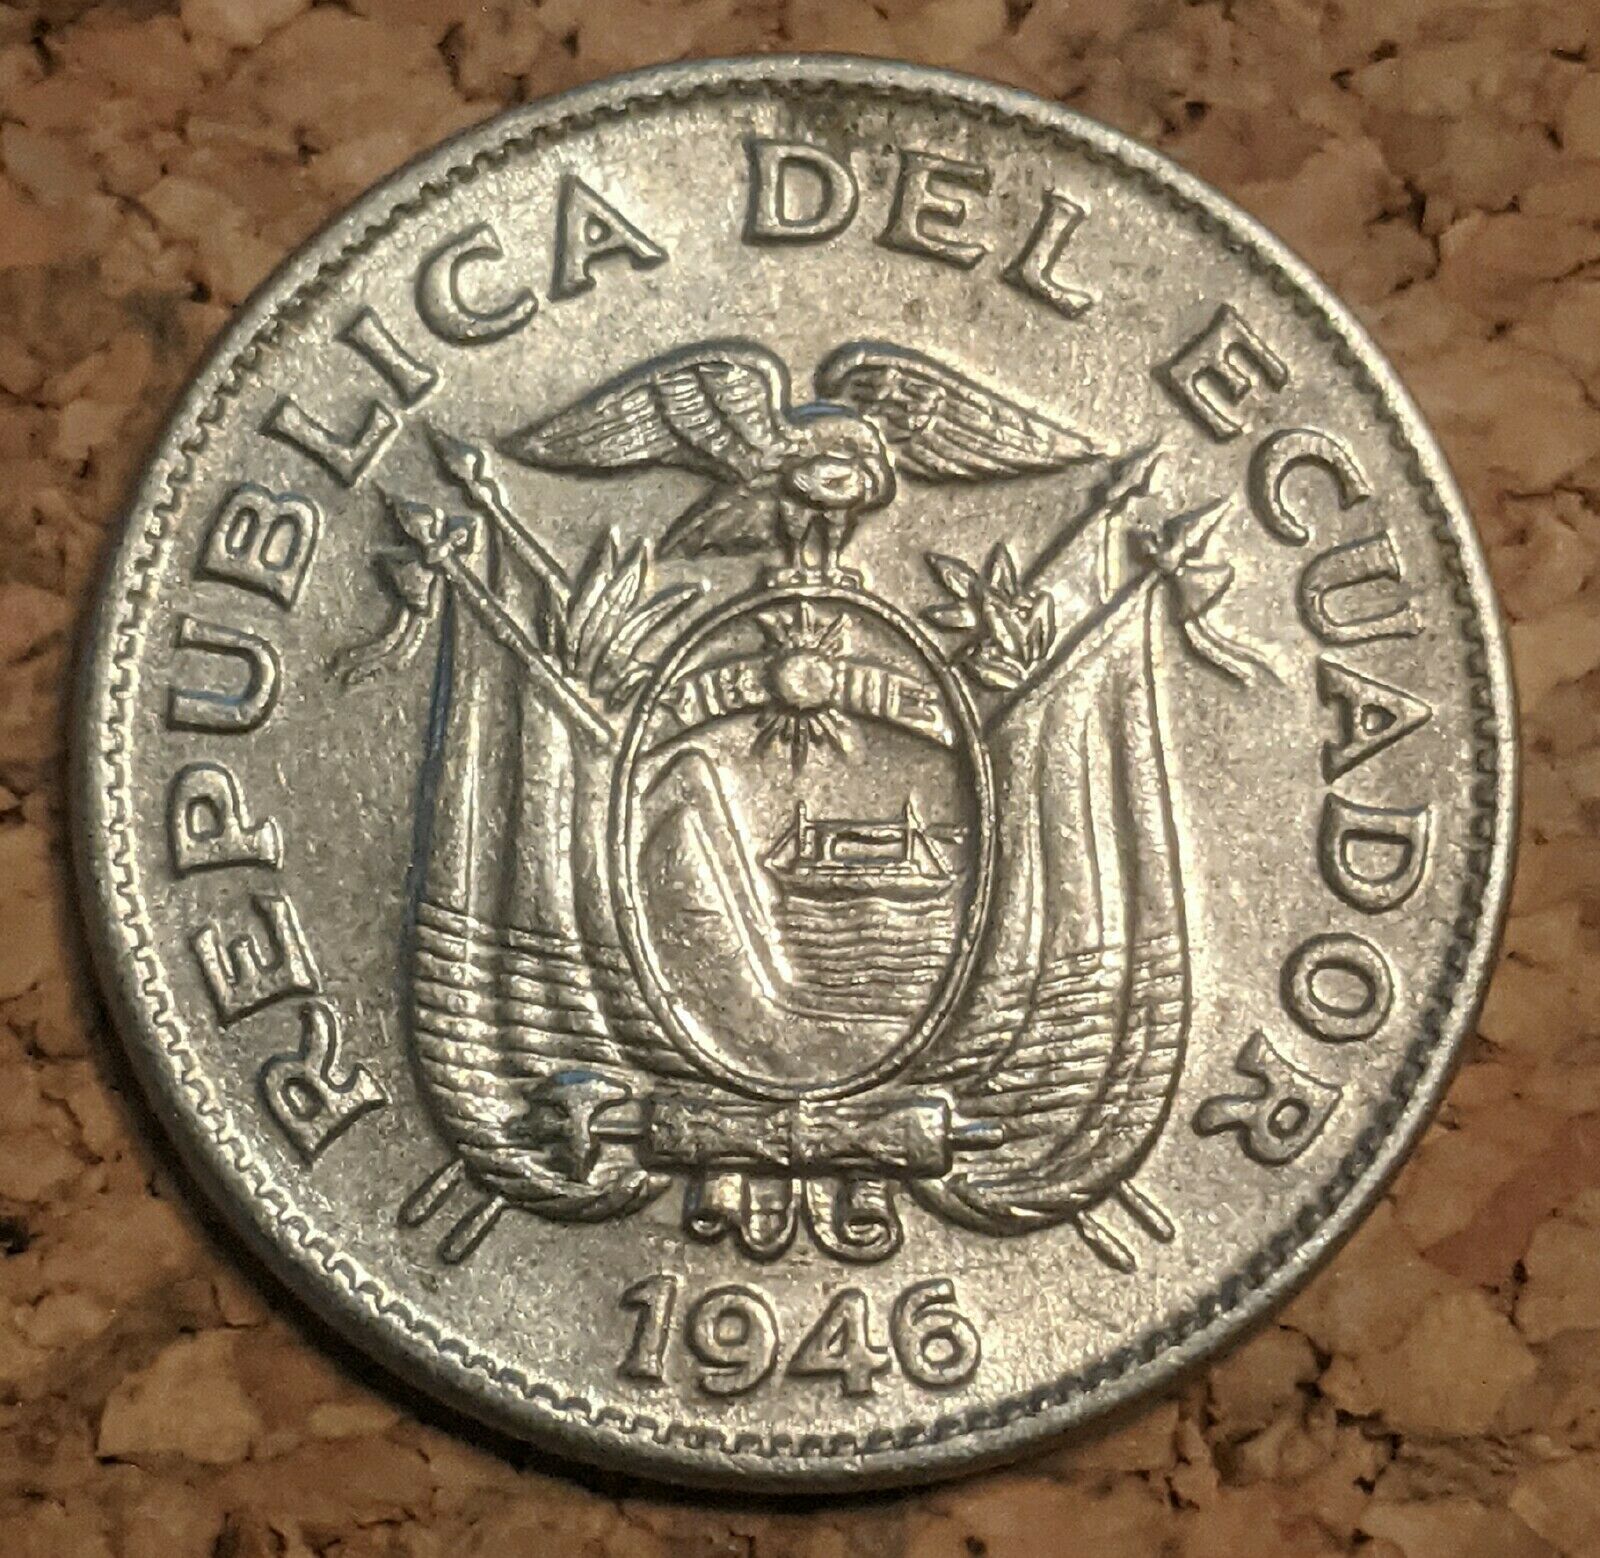 Ecuador 5 Centavos 1946 Coin